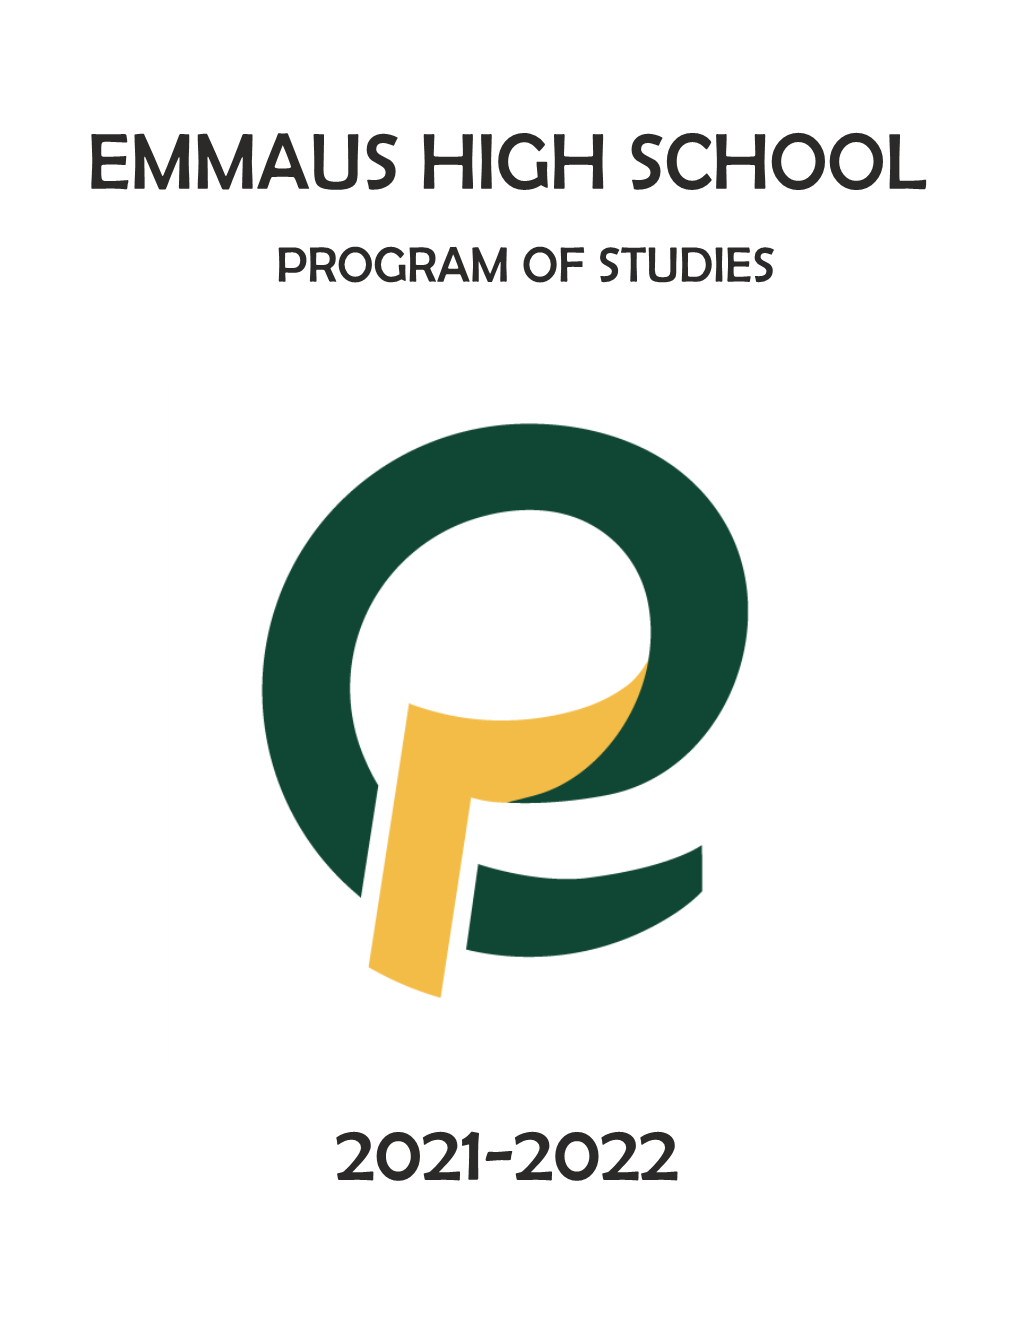 Emmaus High School 2021-2022